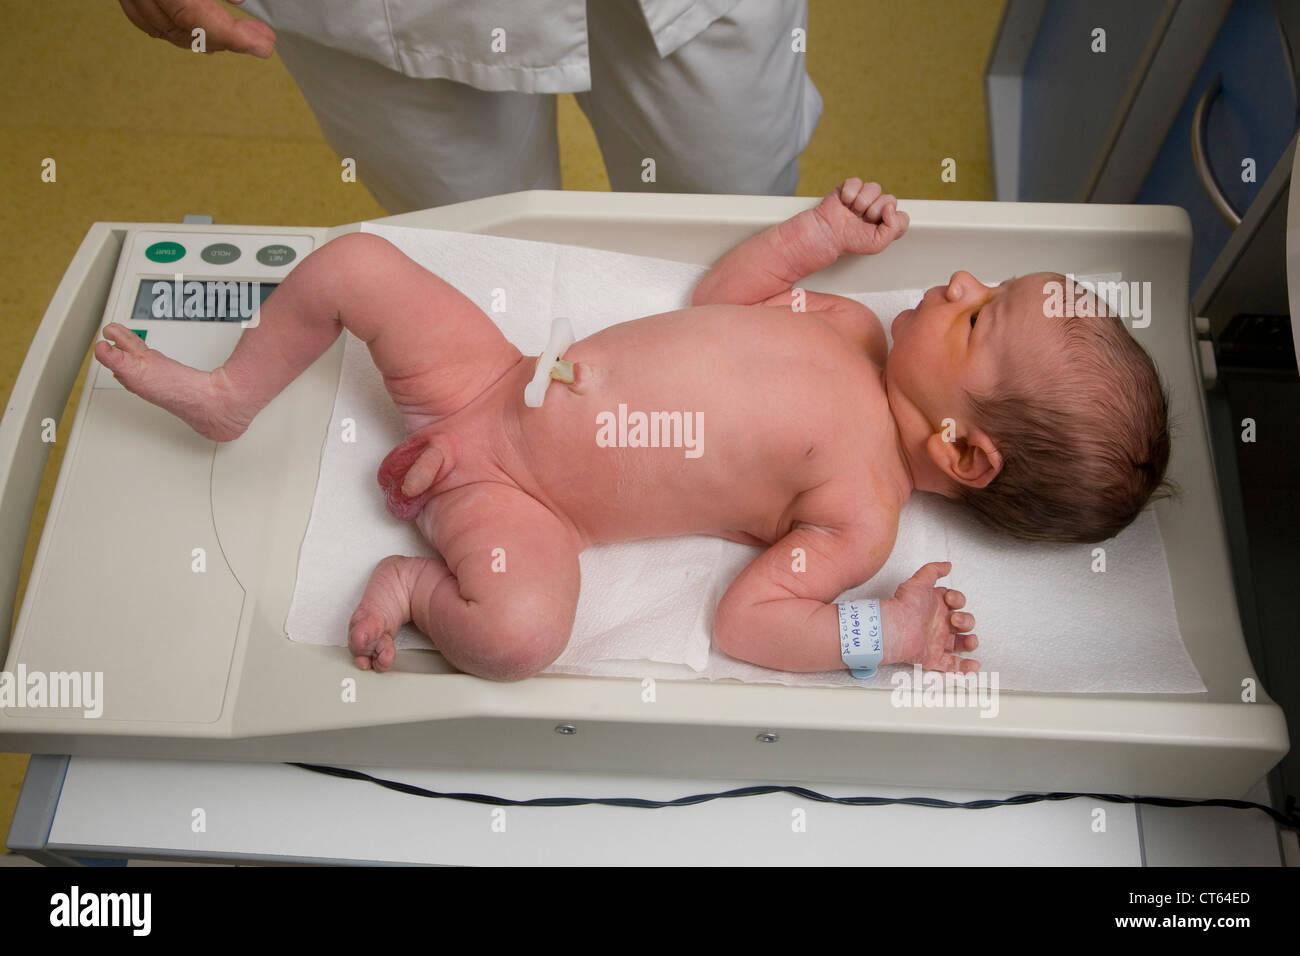 Baby weight immagini e fotografie stock ad alta risoluzione - Alamy